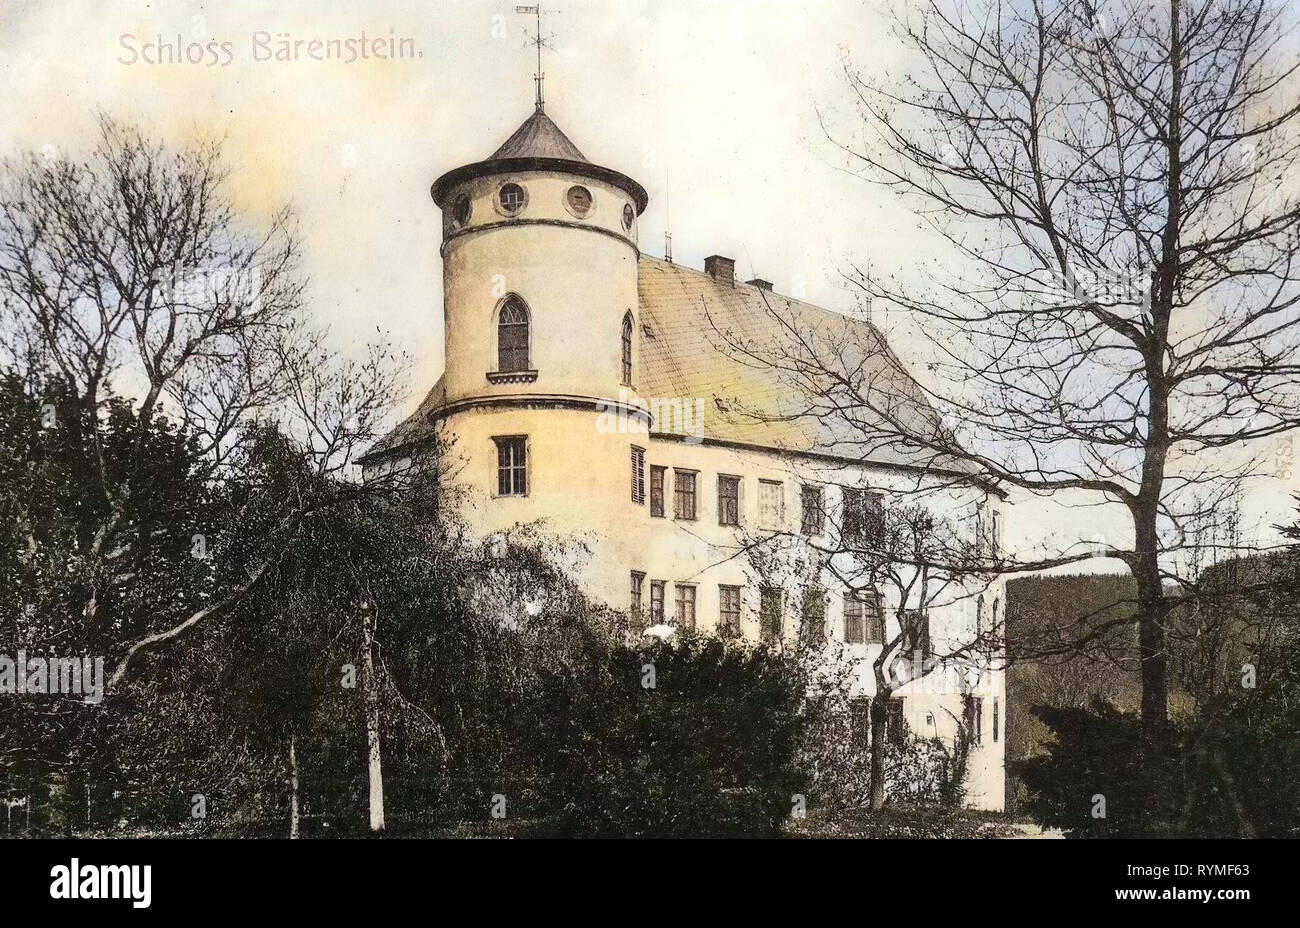 Schloss Bärenstein, Bärenstein (Altenberg), 1907, Landkreis Sächsische Schweiz-Osterzgebirge, Bärenstein, Schloß, Germany Stock Photo